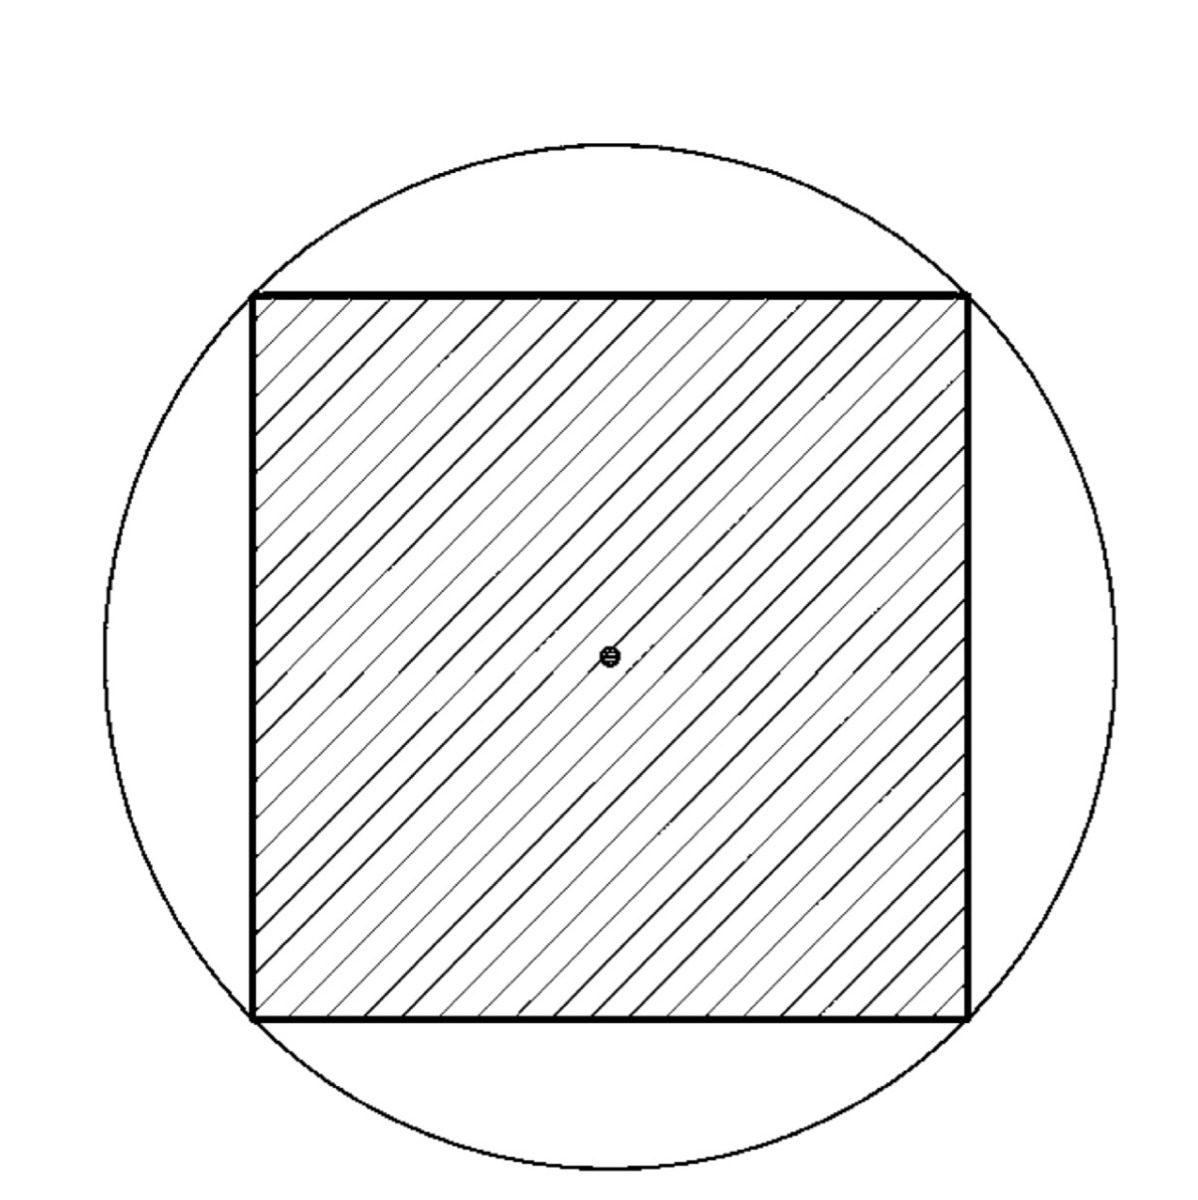 Центр круга в квадрате. Квадрат и окружность внутри. Круг в квадрате. Круг в квадрате рисунок. Квадрат с кругами внутри черчение.